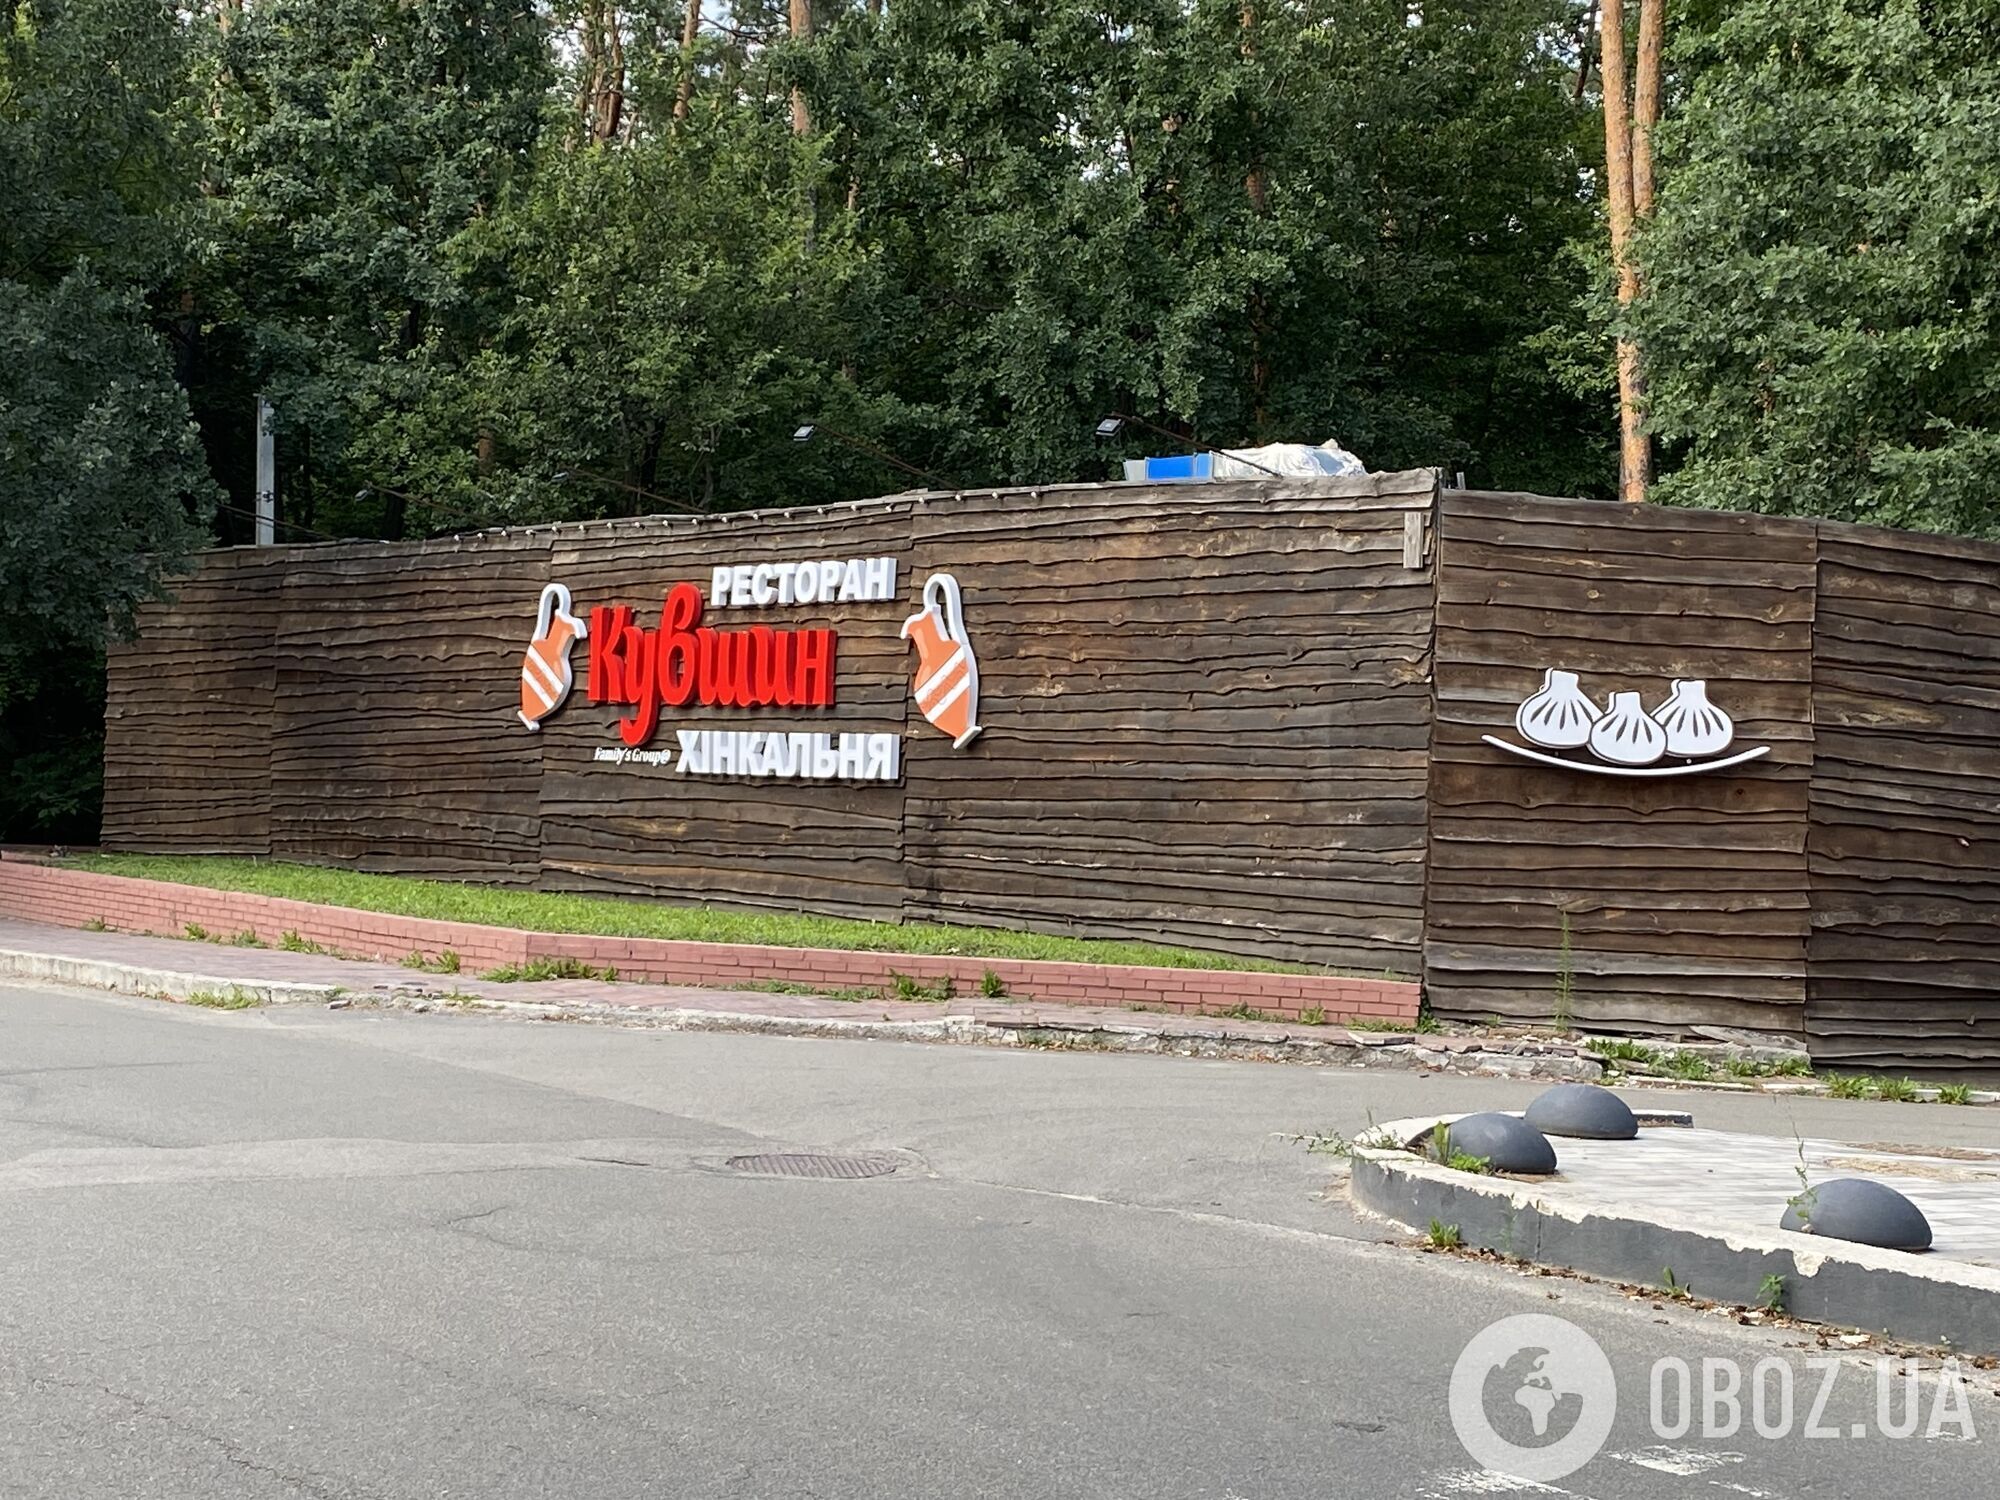 Новый ресторан, больше парковок и стройка в садах: пока идет суд, экс-милиционер продолжает свой бизнес в парке "Голосеевский"